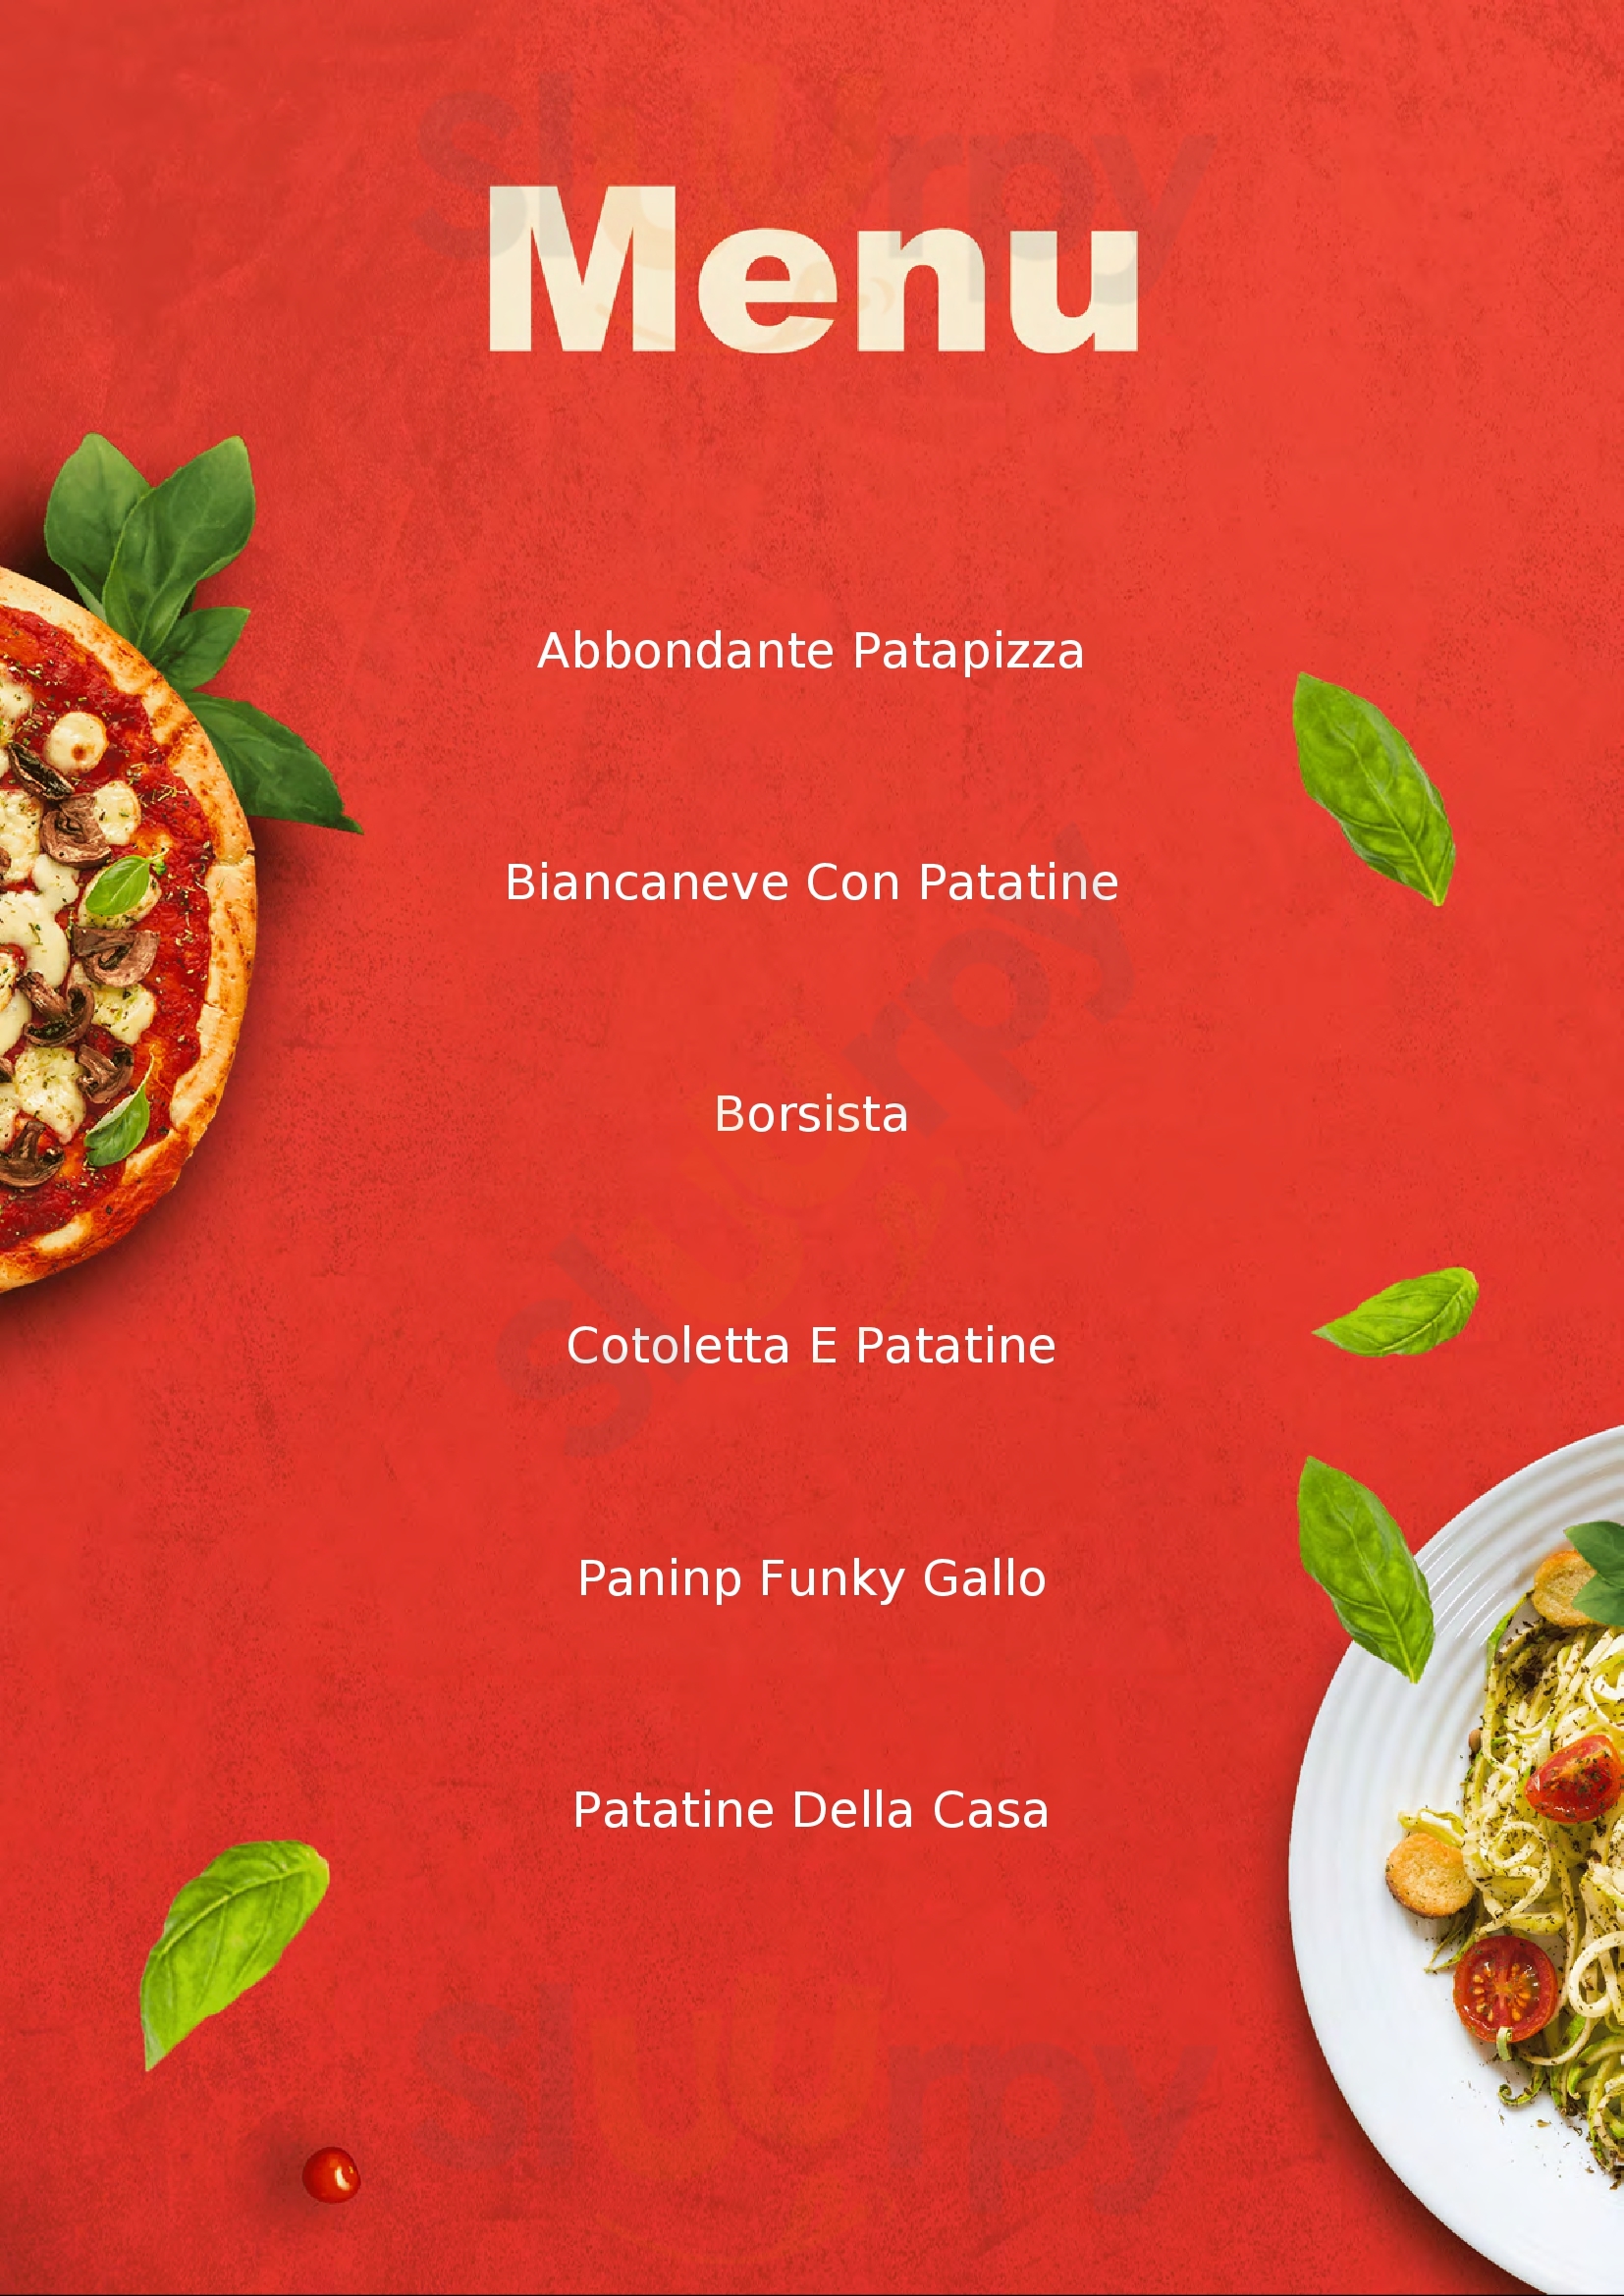 Camiolo Pizza & Ciccia Ragusa menù 1 pagina